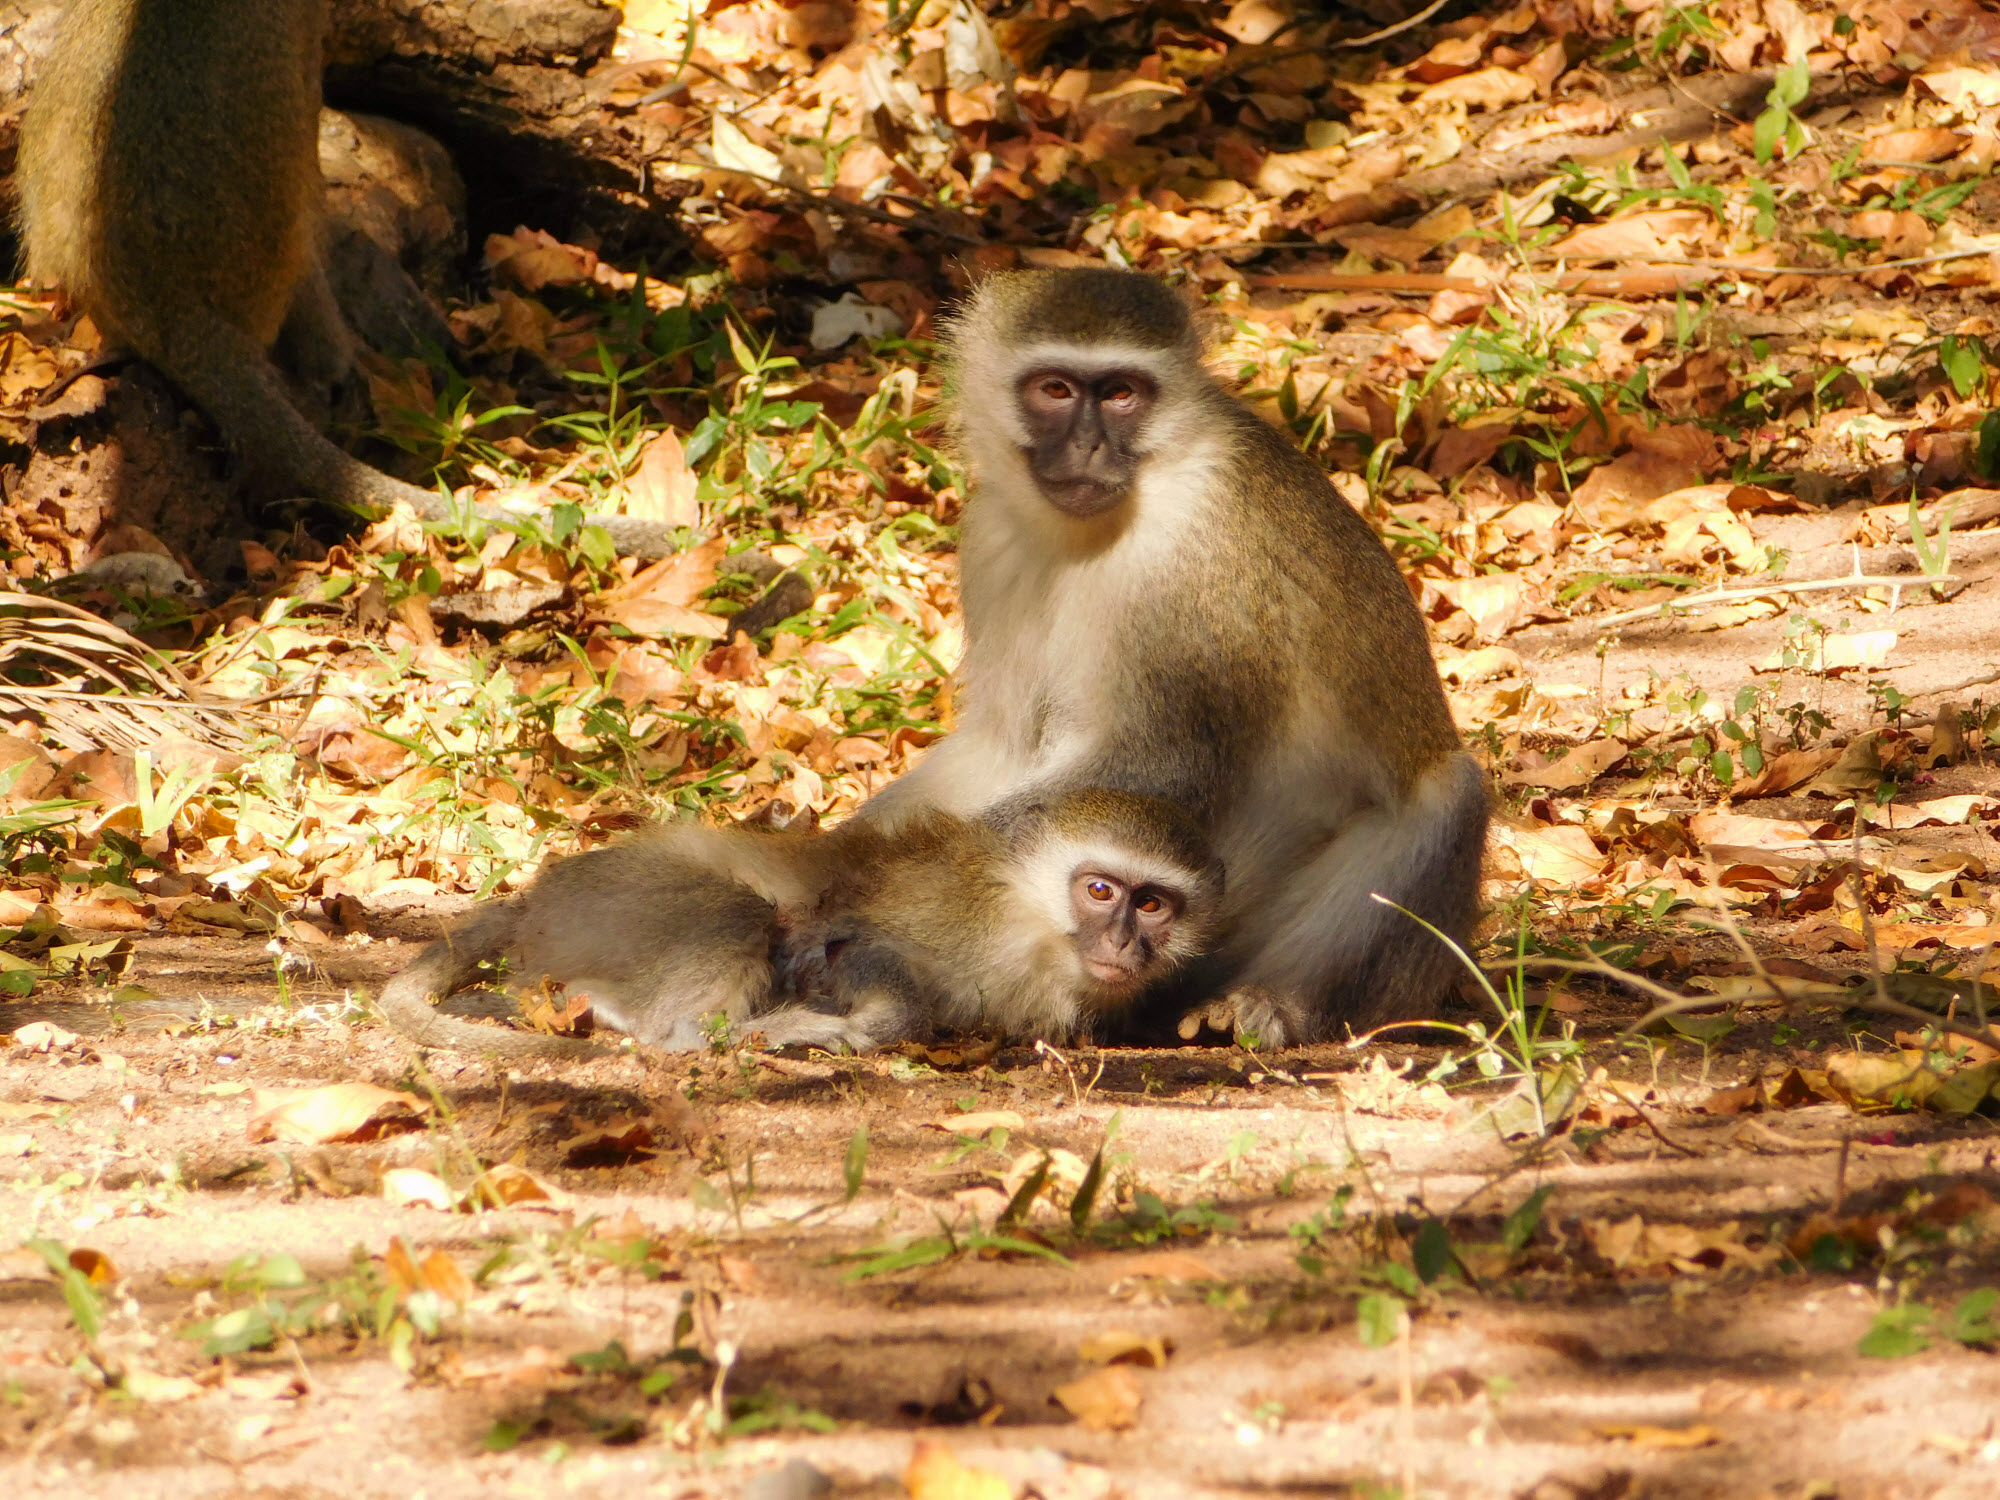 Vervet monkeys grooming each other in the sun